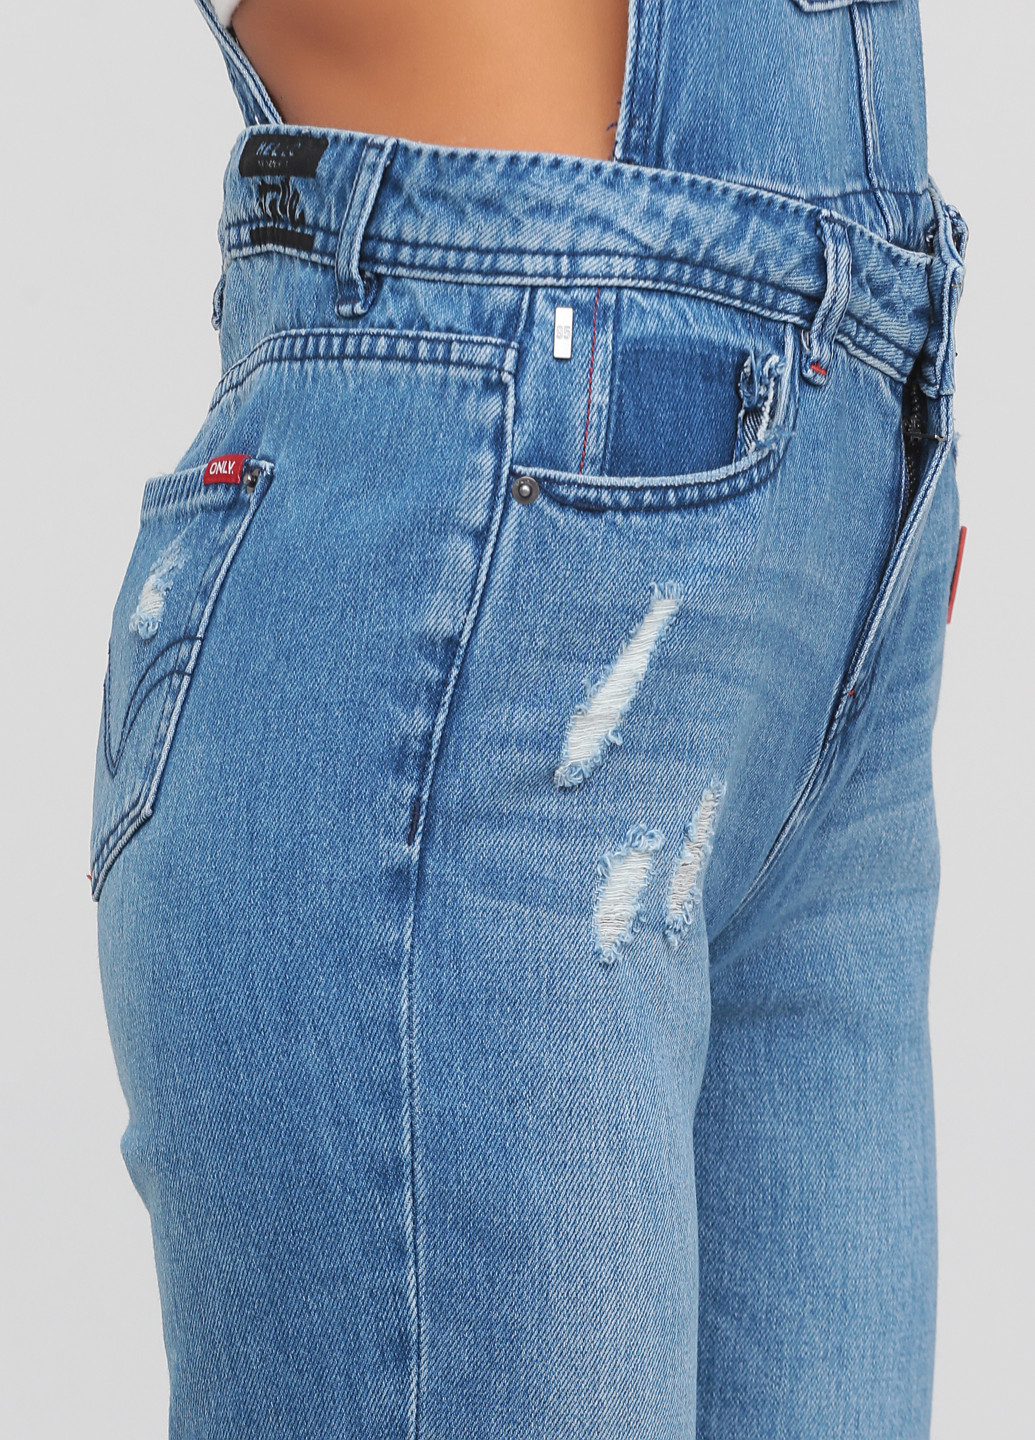 Комбінезон Only комбінезон-брюки напис світло-синій джинсовий бавовна